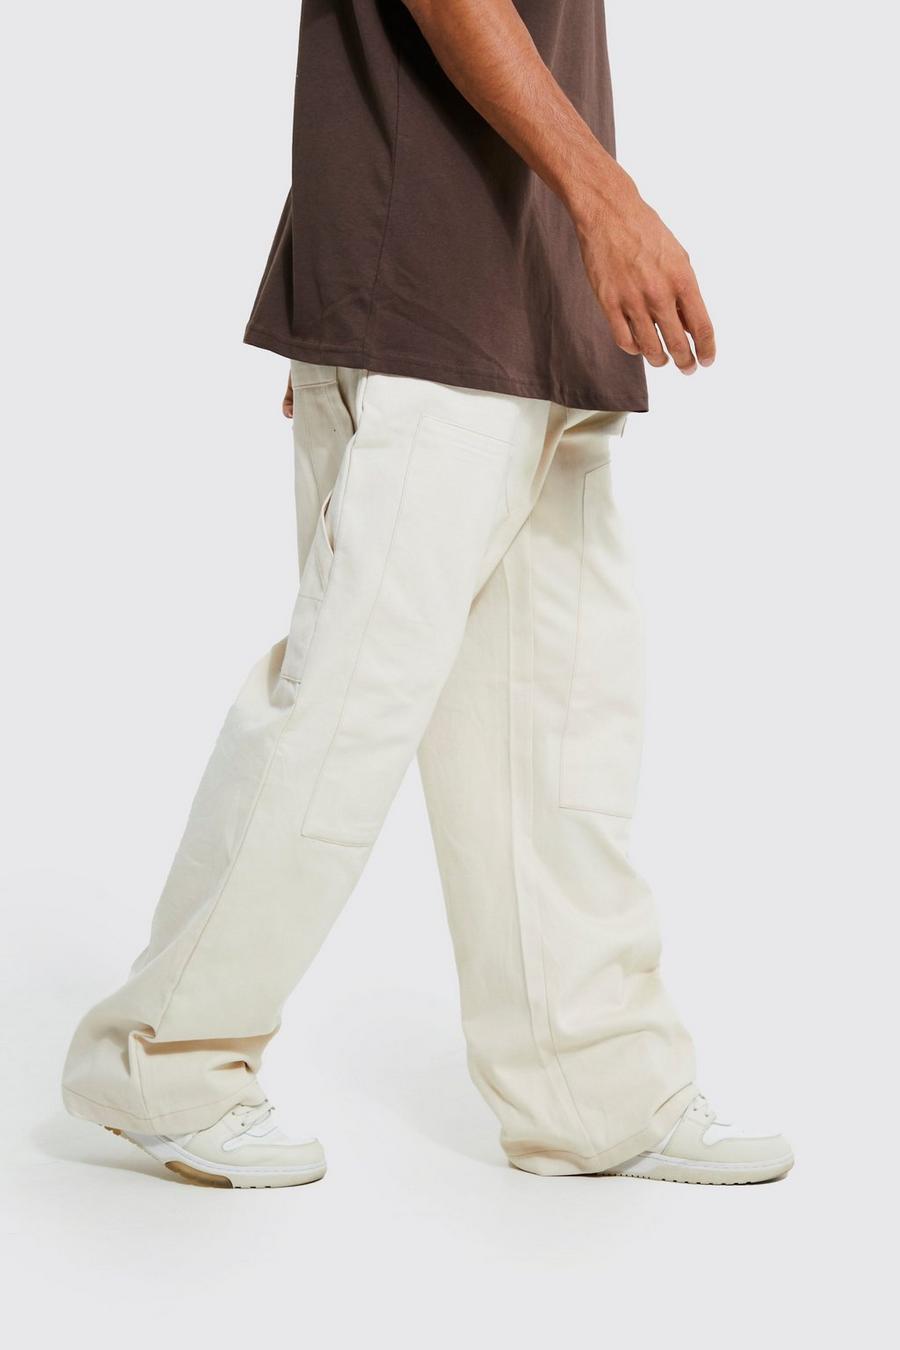 Pantalón Tall ancho grueso estilo obrero, Ecru bianco